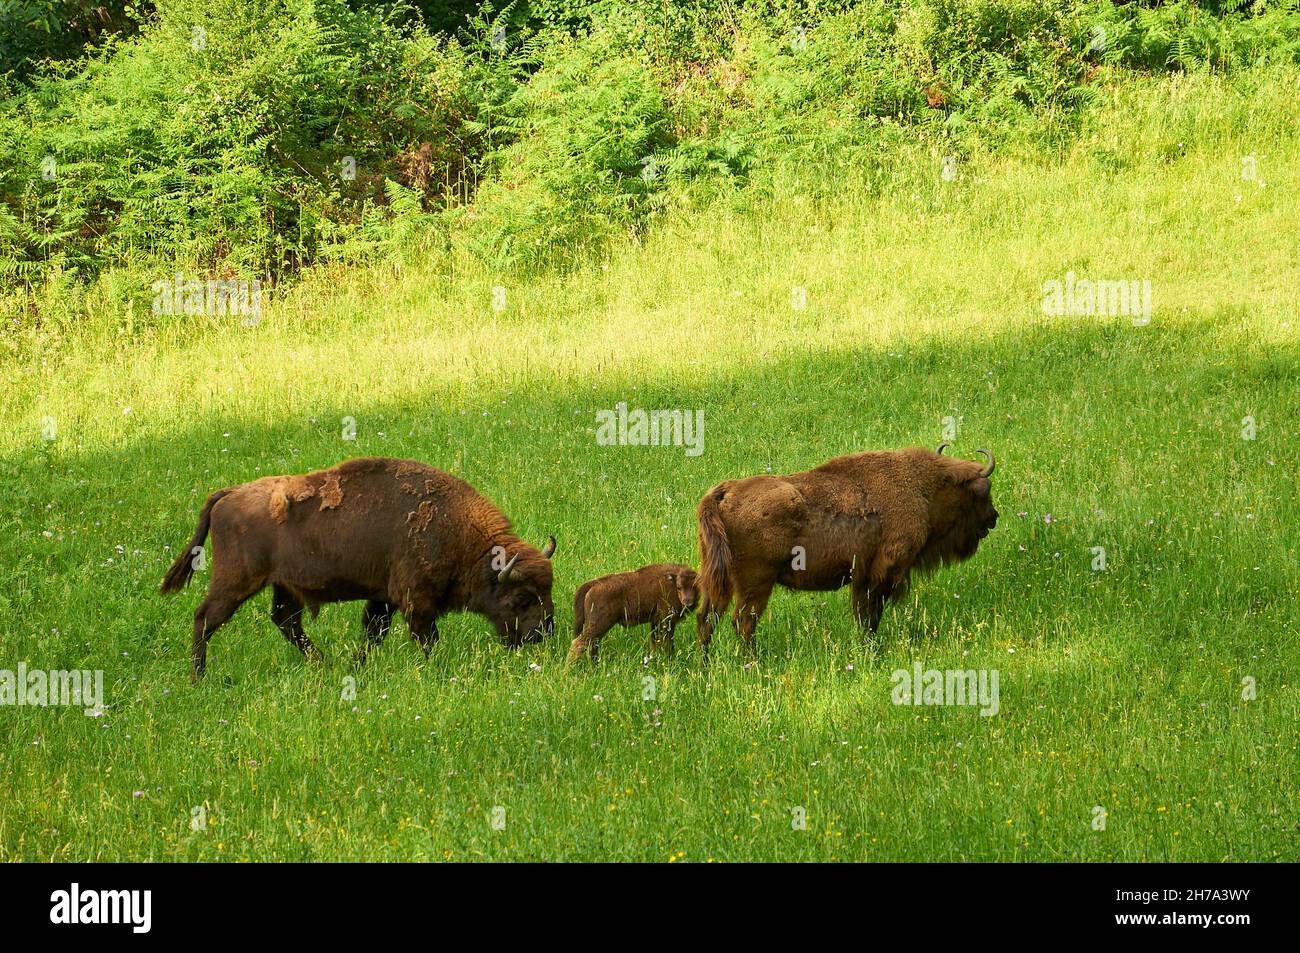 Europäische Bisons (Bison bonasus), genannt Lipión und Pipa, mit ihrem neu geborenen Kalb, grasen im prähistorischen Park von Teverga (Asturien, Spanien) Stockfoto